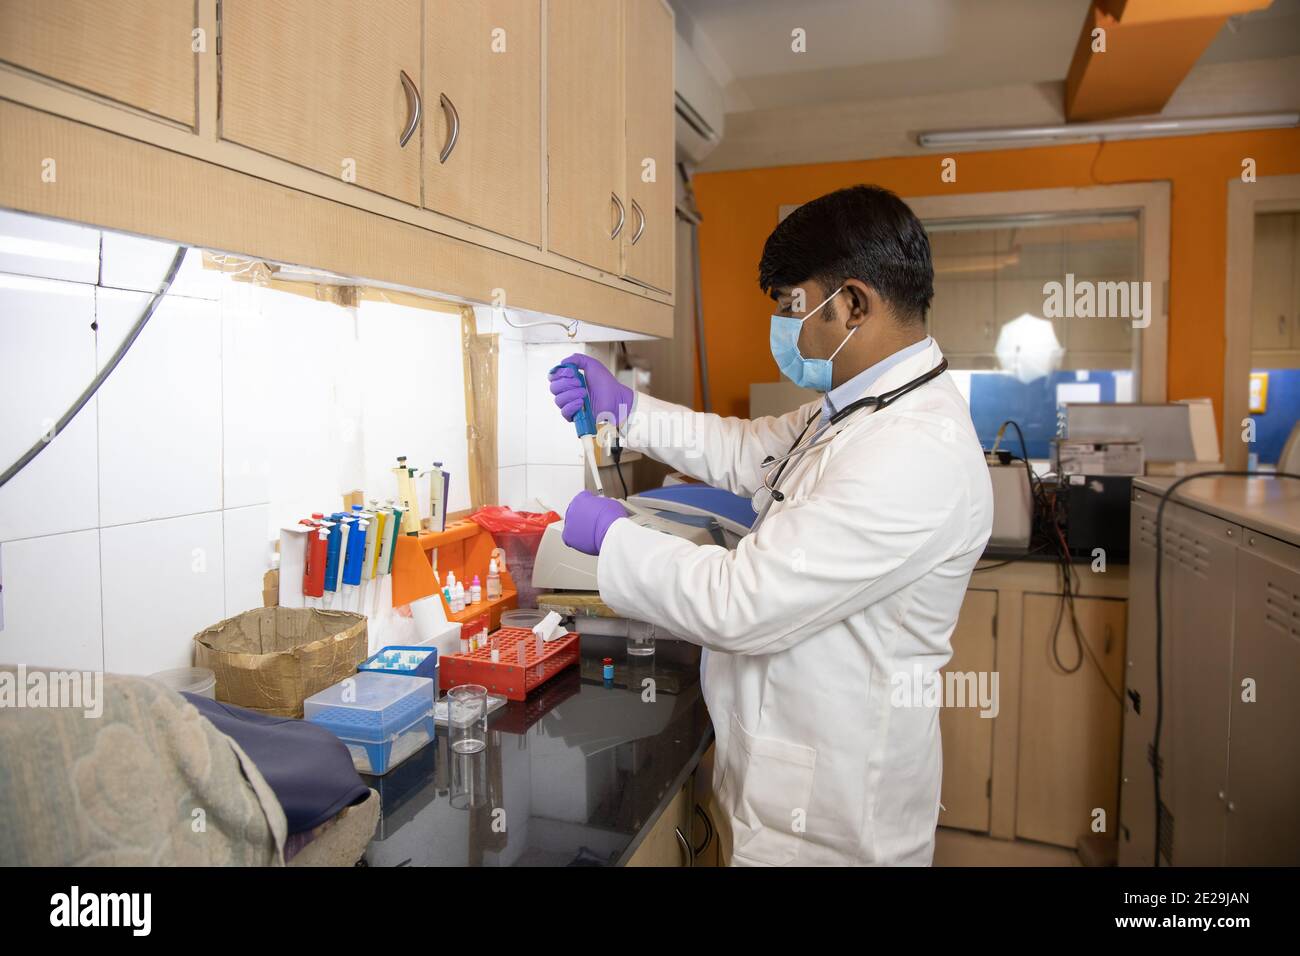 Medico indiano scienziato medico che indossa maschera chirurgica faccia fare chimica o ricerca di droga in laboratorio clinico per vaccino virus covid, assistenza sanitaria Foto Stock